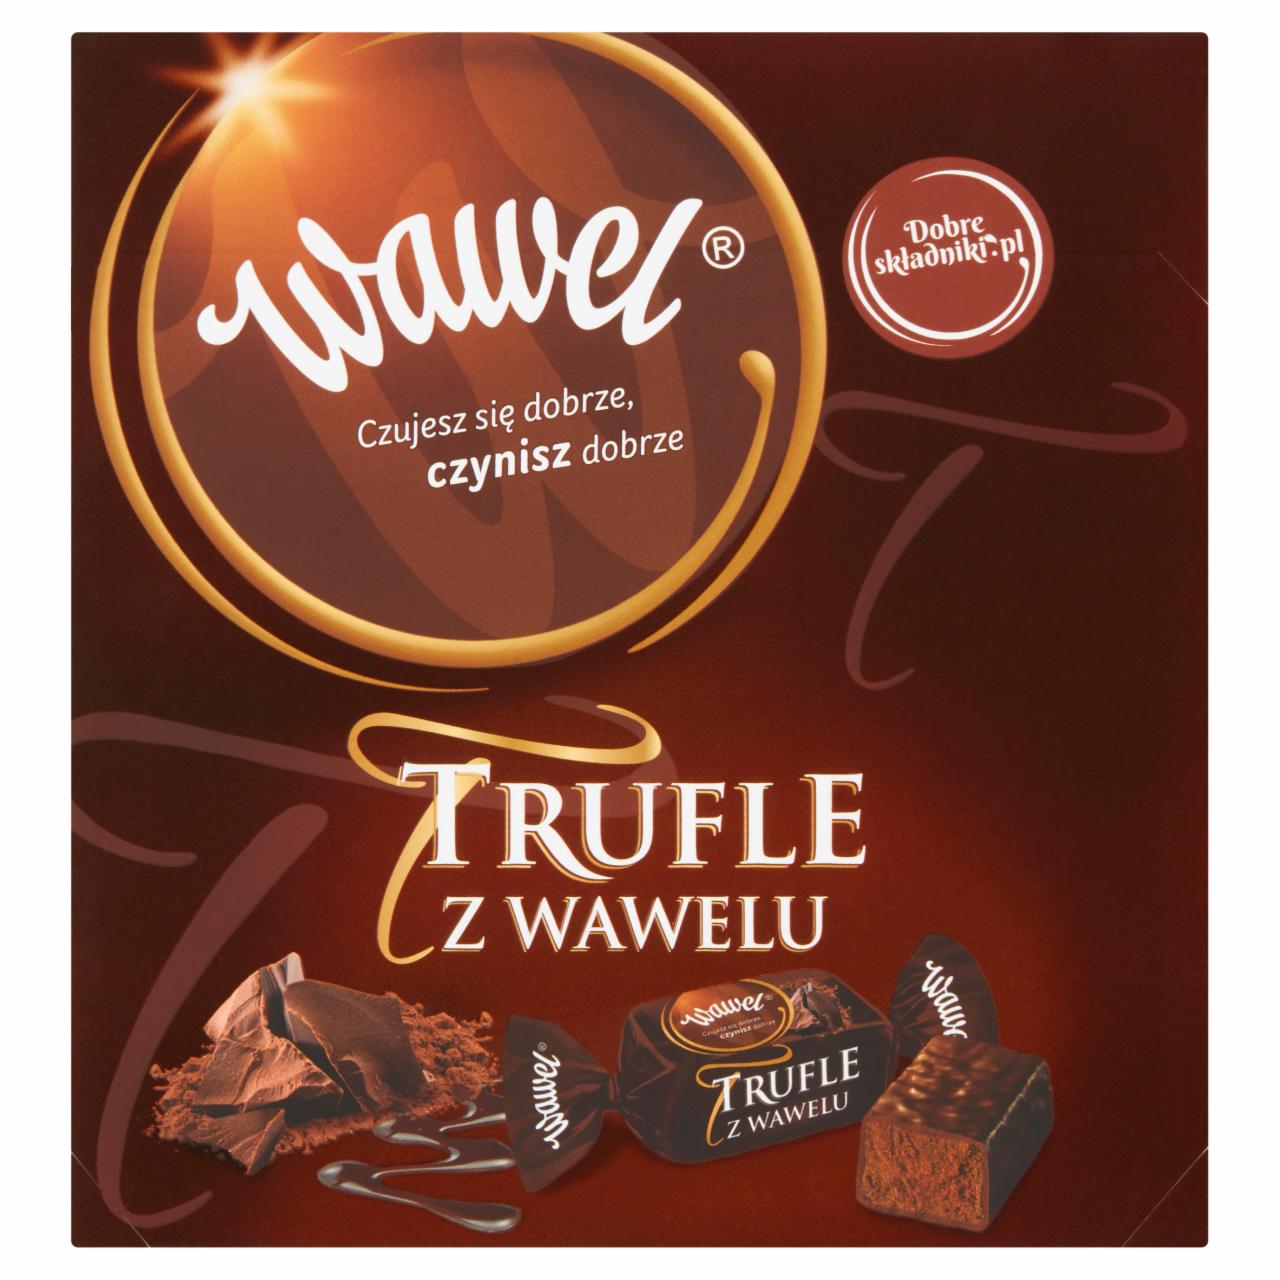 Zdjęcia - Wawel Trufle z Wawelu Cukierki o smaku rumowym w czekoladzie 300 g